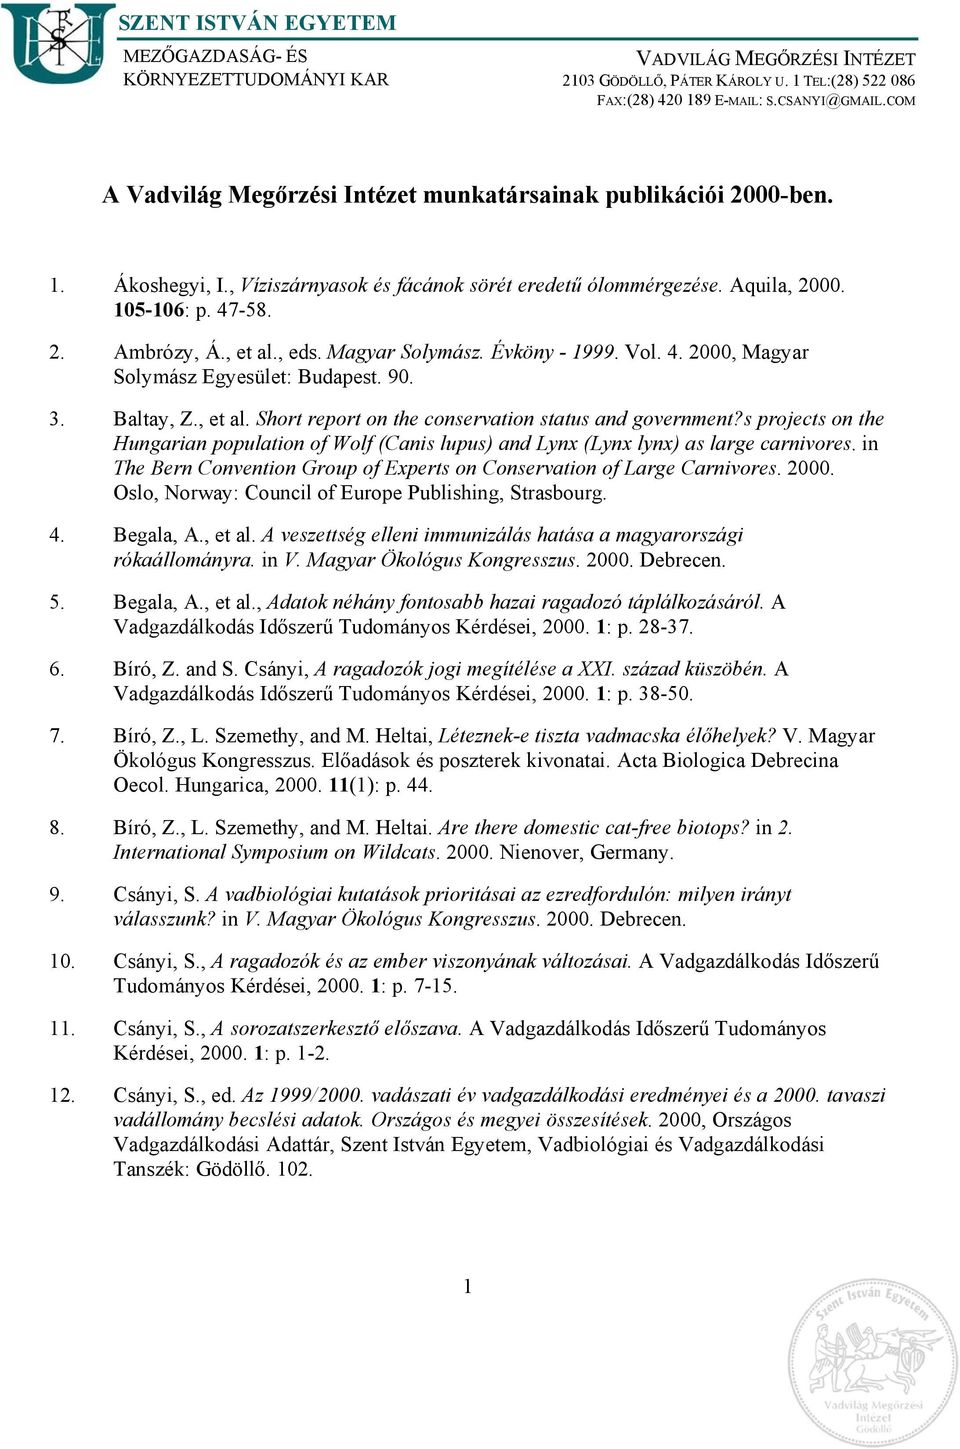 , eds. Magyar Solymász. Évköny - 1999. Vol. 4. 2000, Magyar Solymász Egyesület: Budapest. 90. 3. Baltay, Z., et al. Short report on the conservation status and government?